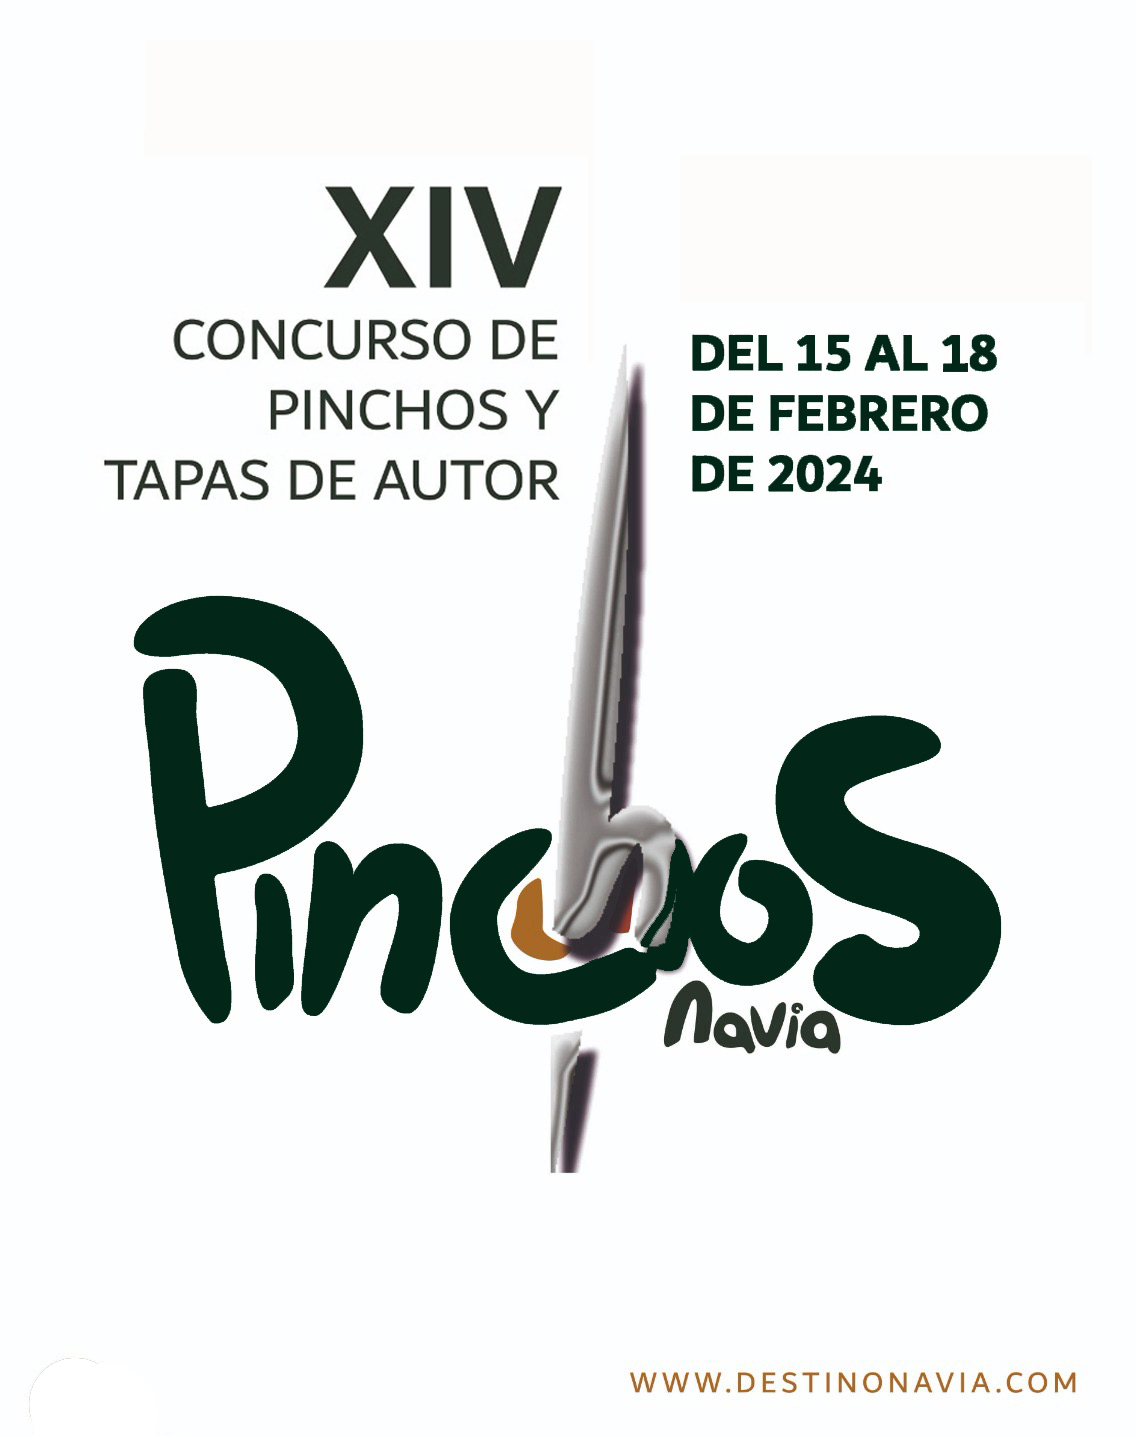 CONCURSO DE PINCHOS Y TAPAS DE AUTOR DE NAVIA